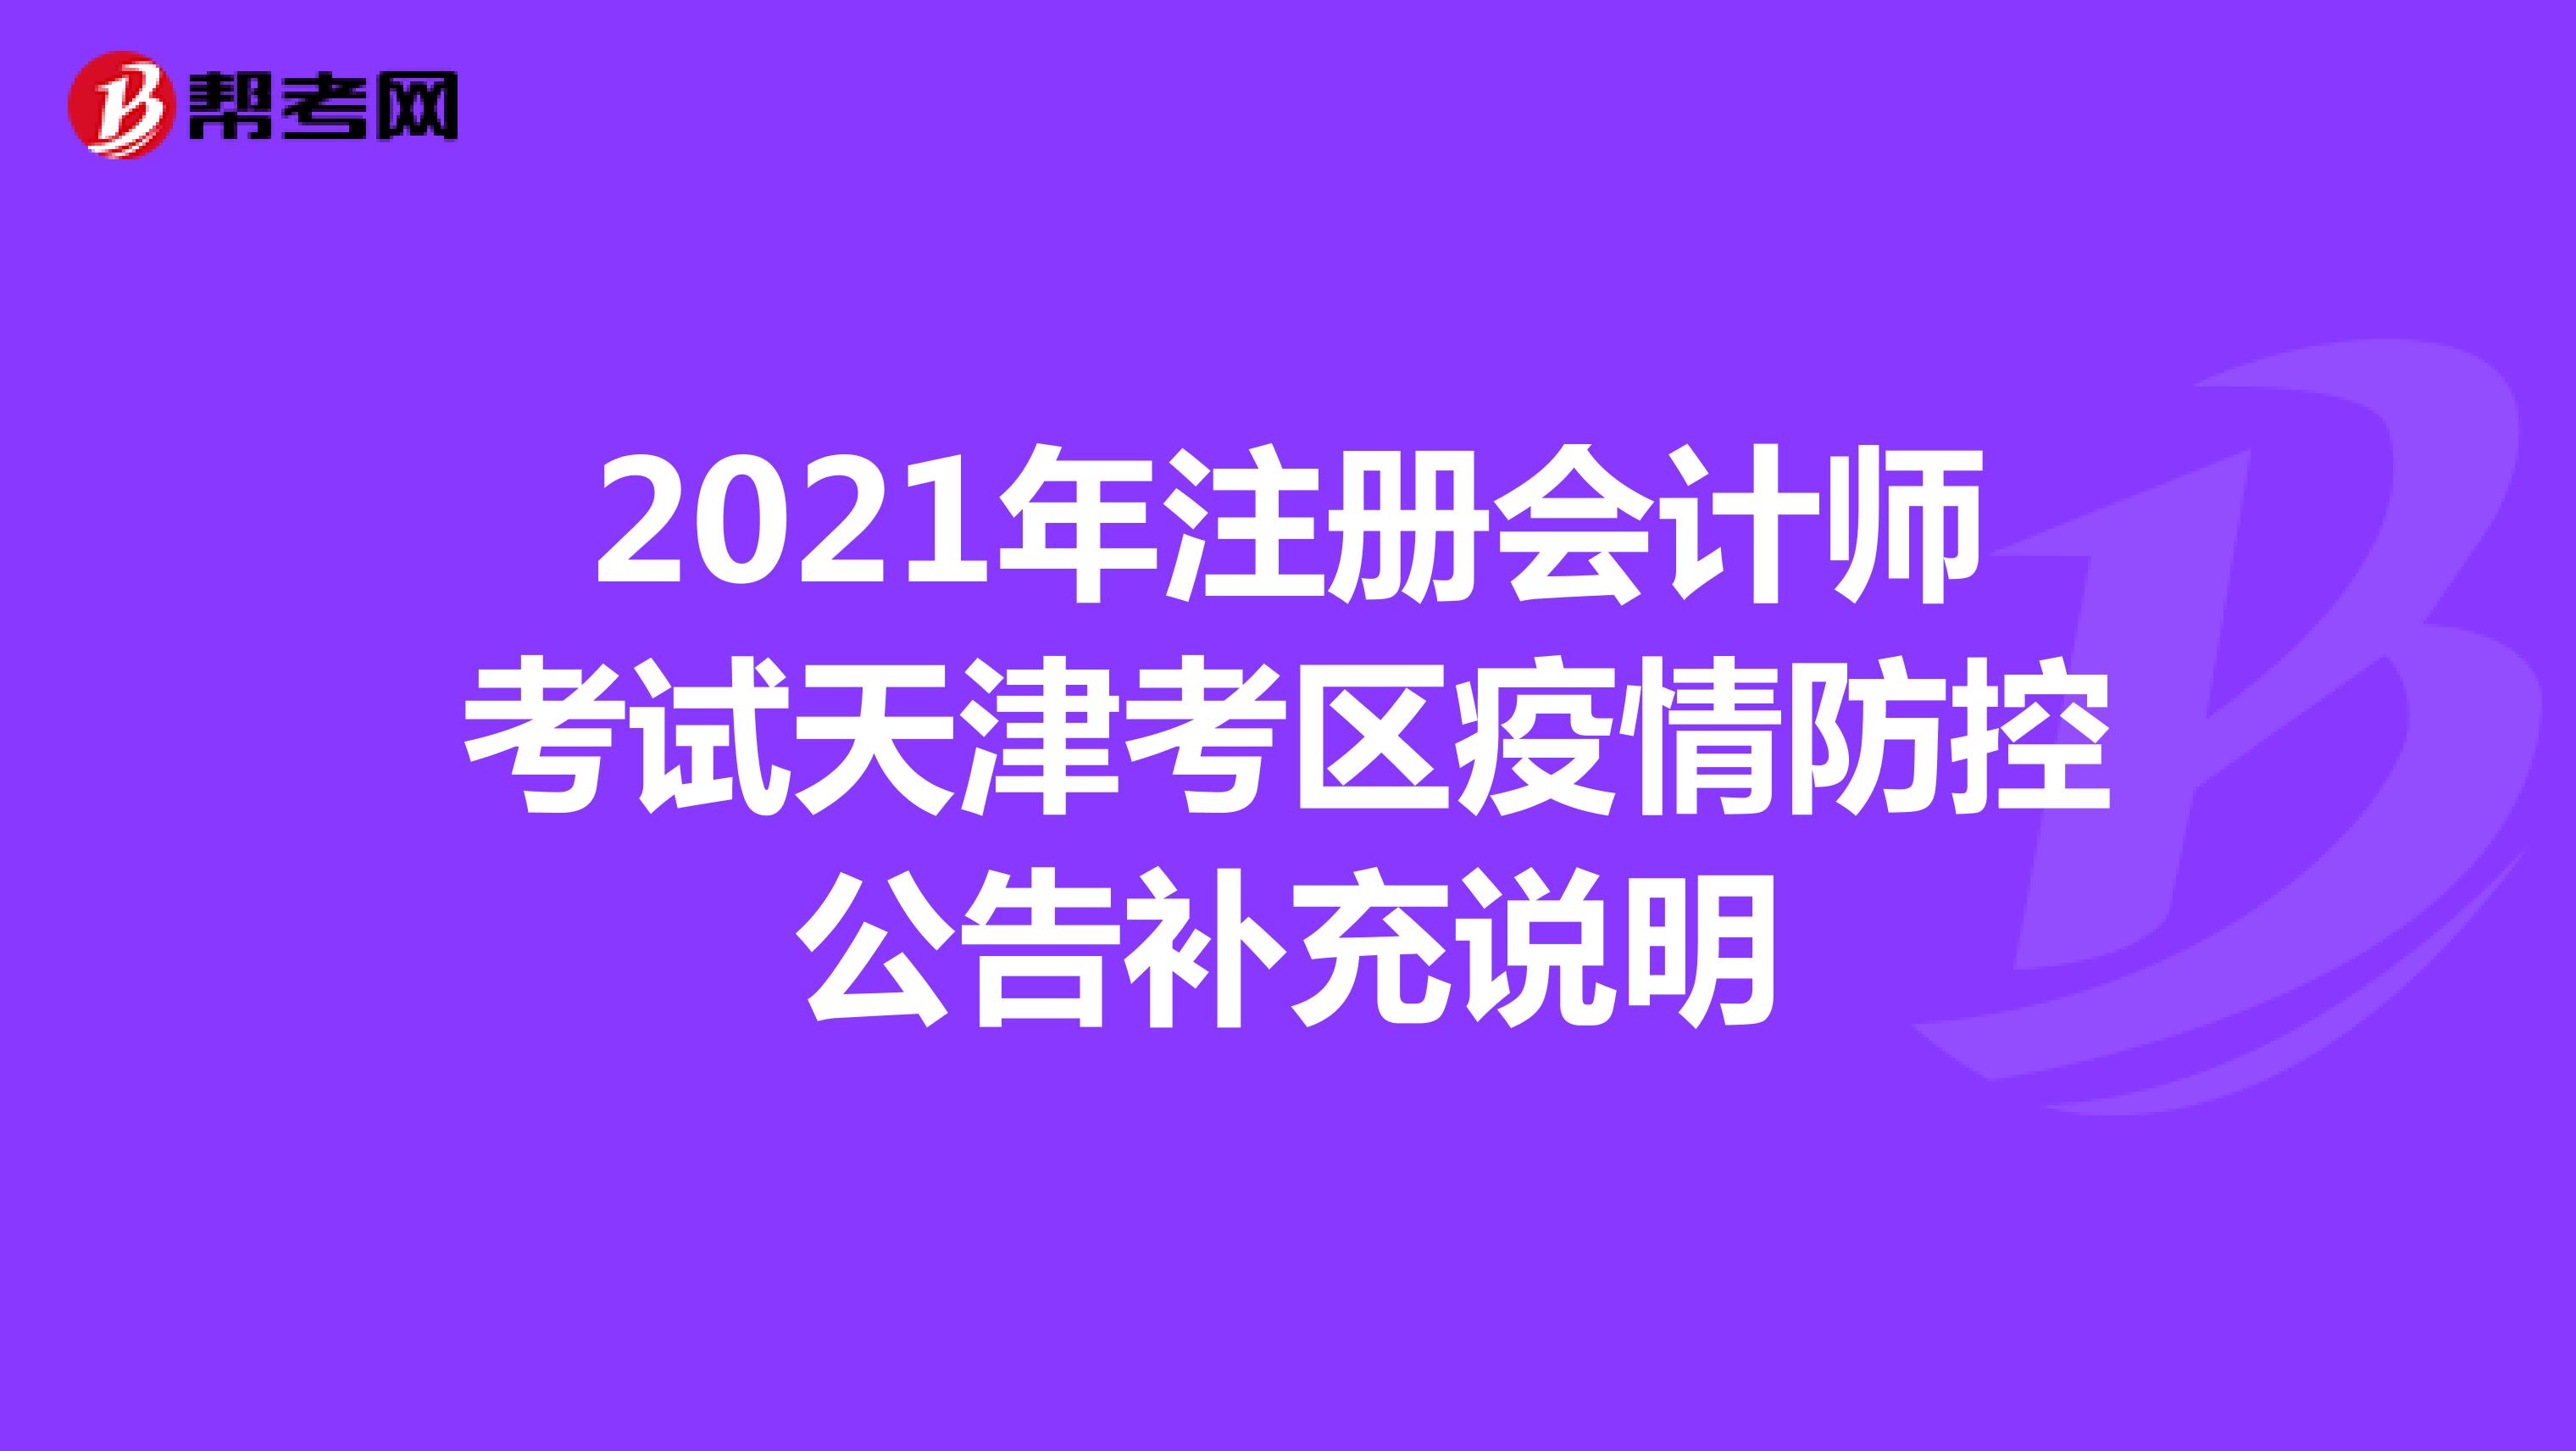 2021年注册会计师考试天津考区疫情防控公告补充说明